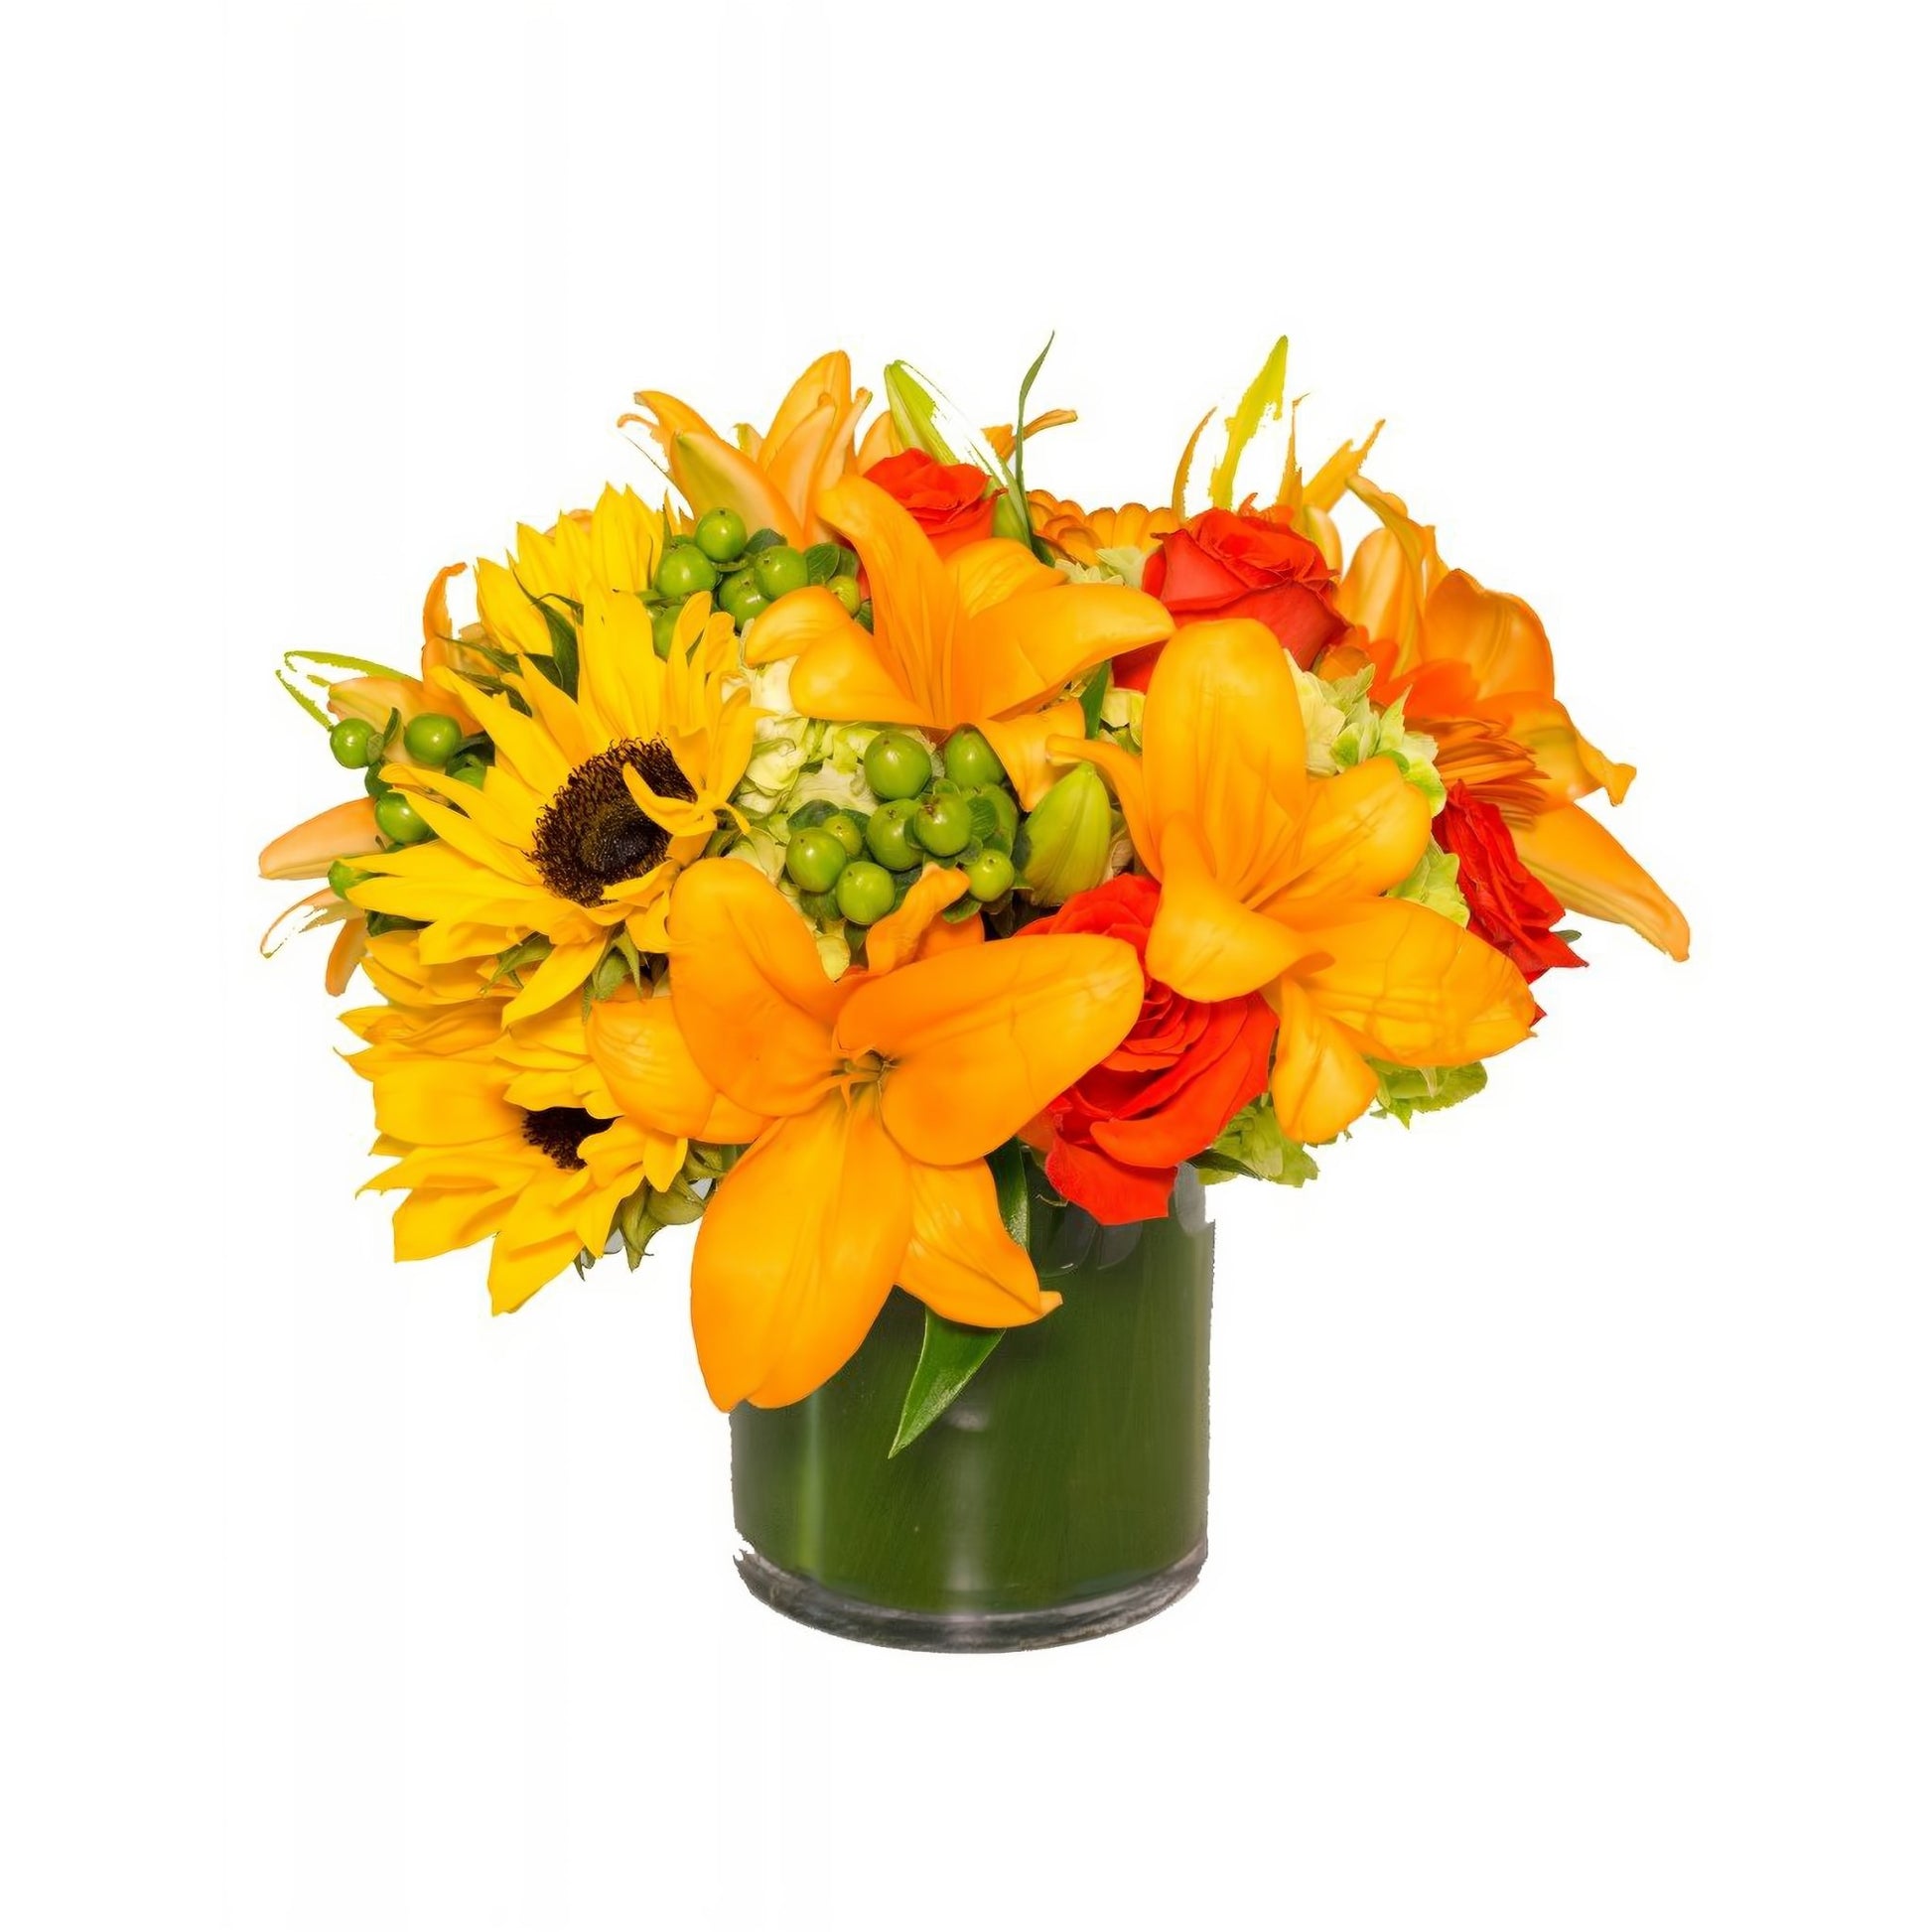 Sunburst Bouquet - Floral_Arrangement - Flower Delivery NYC